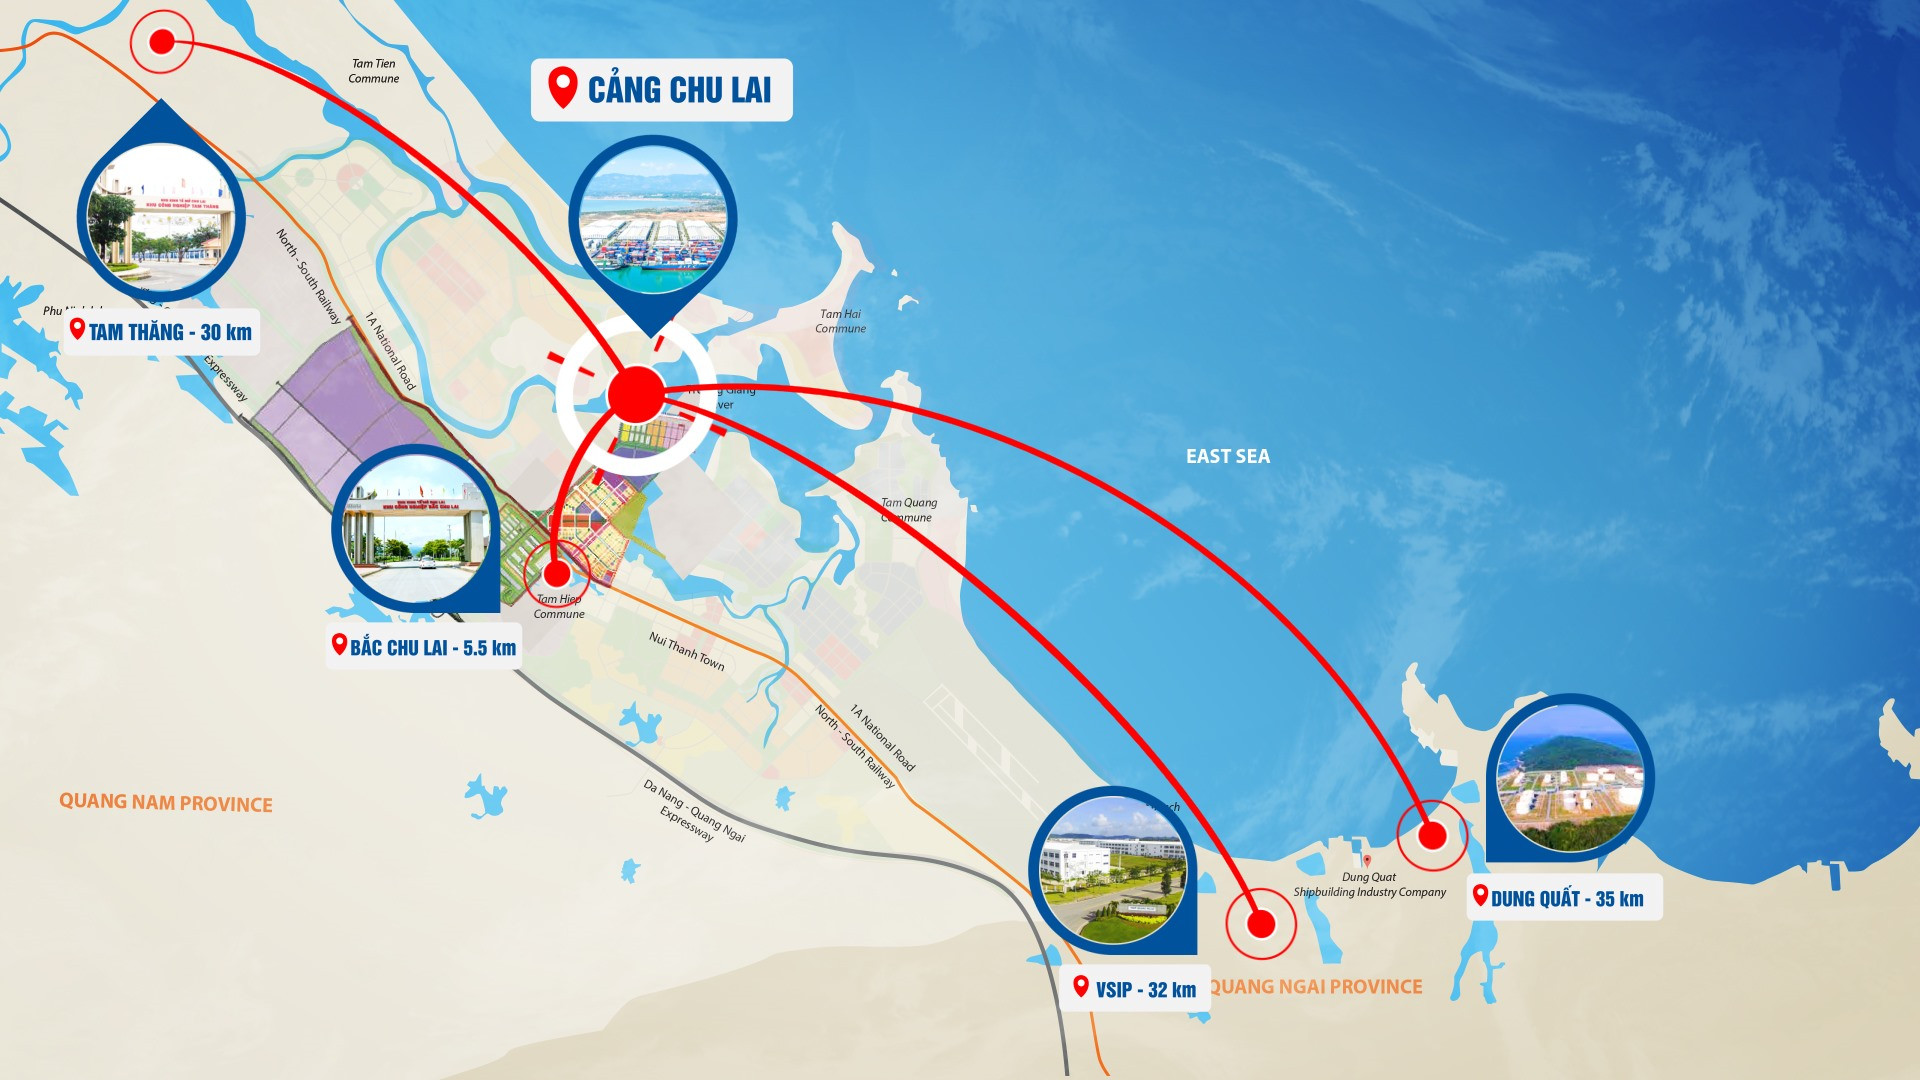 Cảng Chu Lai có vị trí địa lý thuận lợi, kết nối với các khu vực công nghiệp và các vùng, miền.